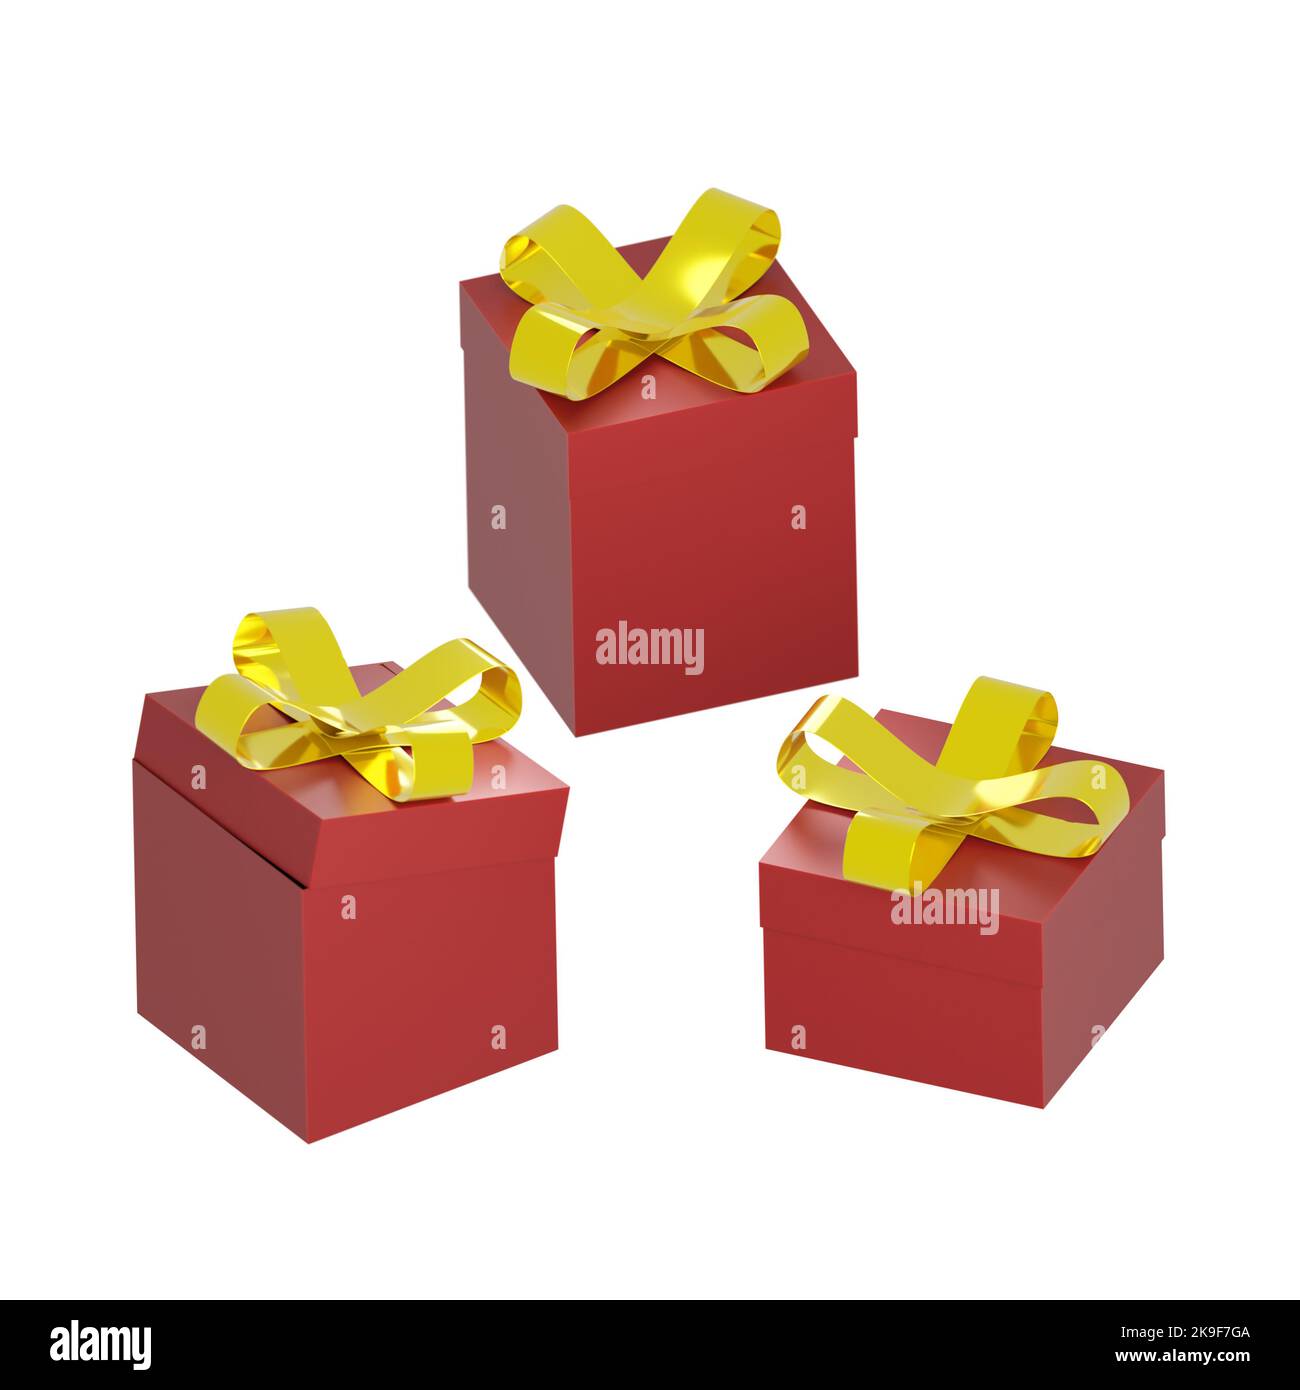 3d rendering di scatole regalo rosse con graziosi nodi d'arco dorati. Vacanze invernali, natale relativa illustrazione dei regali con spazio di testo, bianco isolato Foto Stock